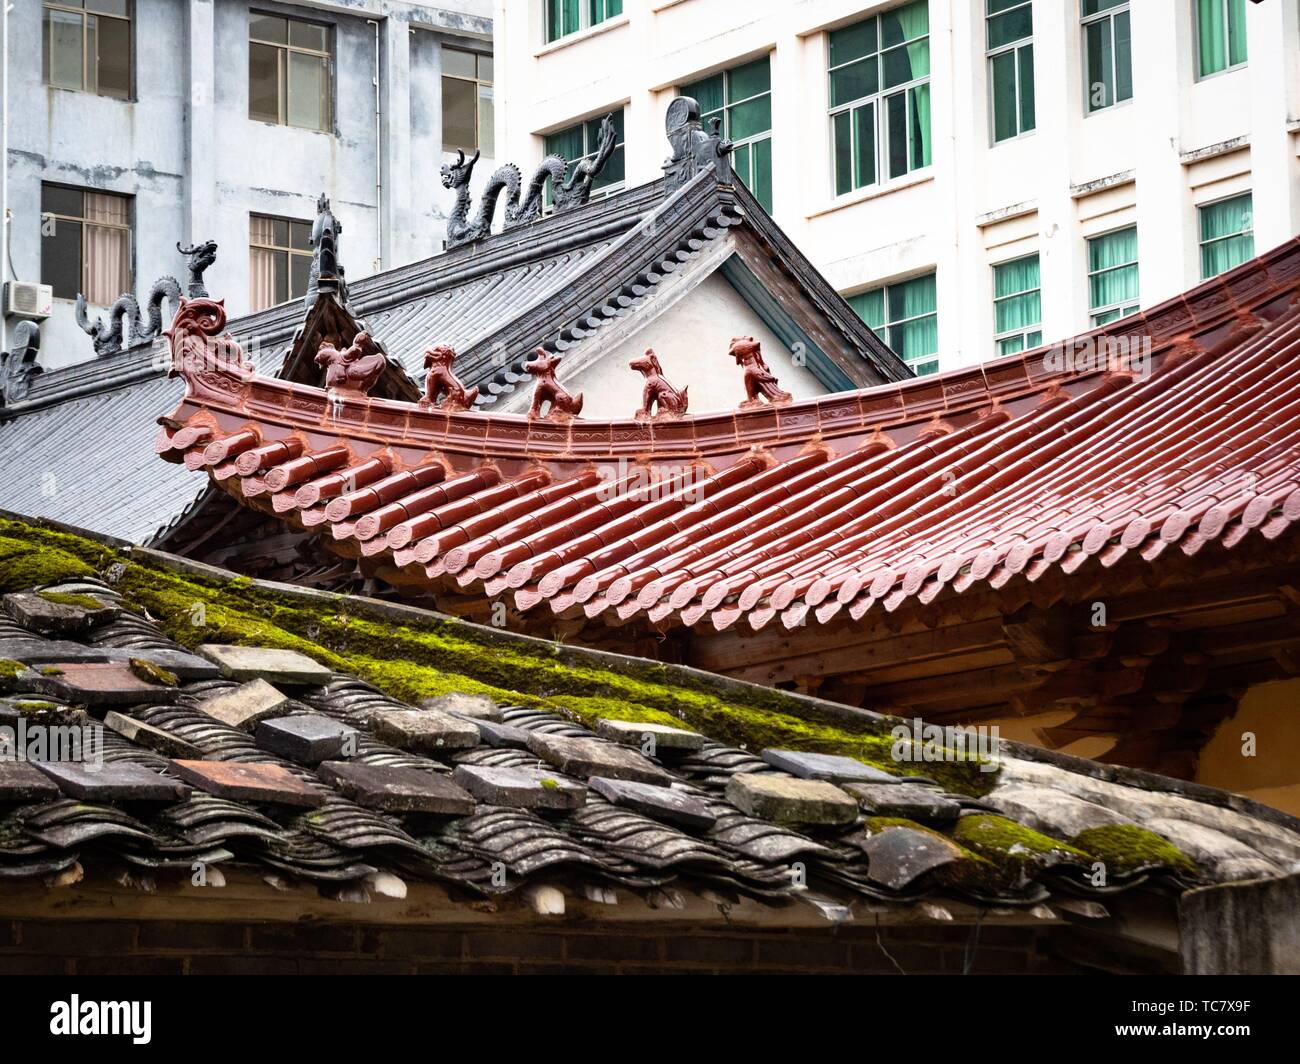 China Xiapu Architecture Stock Photo